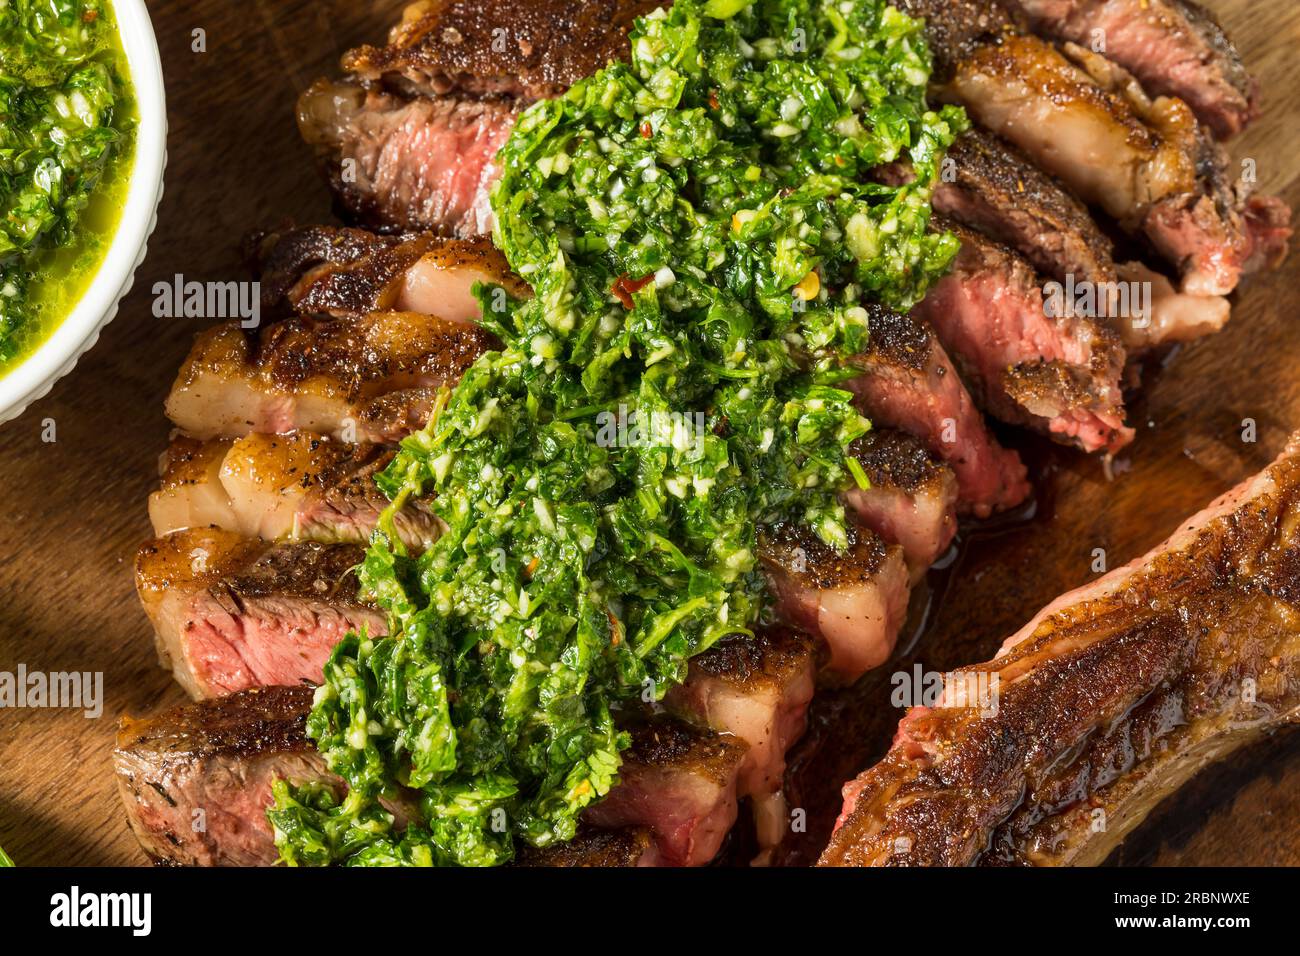 Homemade Chimichurri Sauce and Ribeye Steak with Garlic Stock Photo